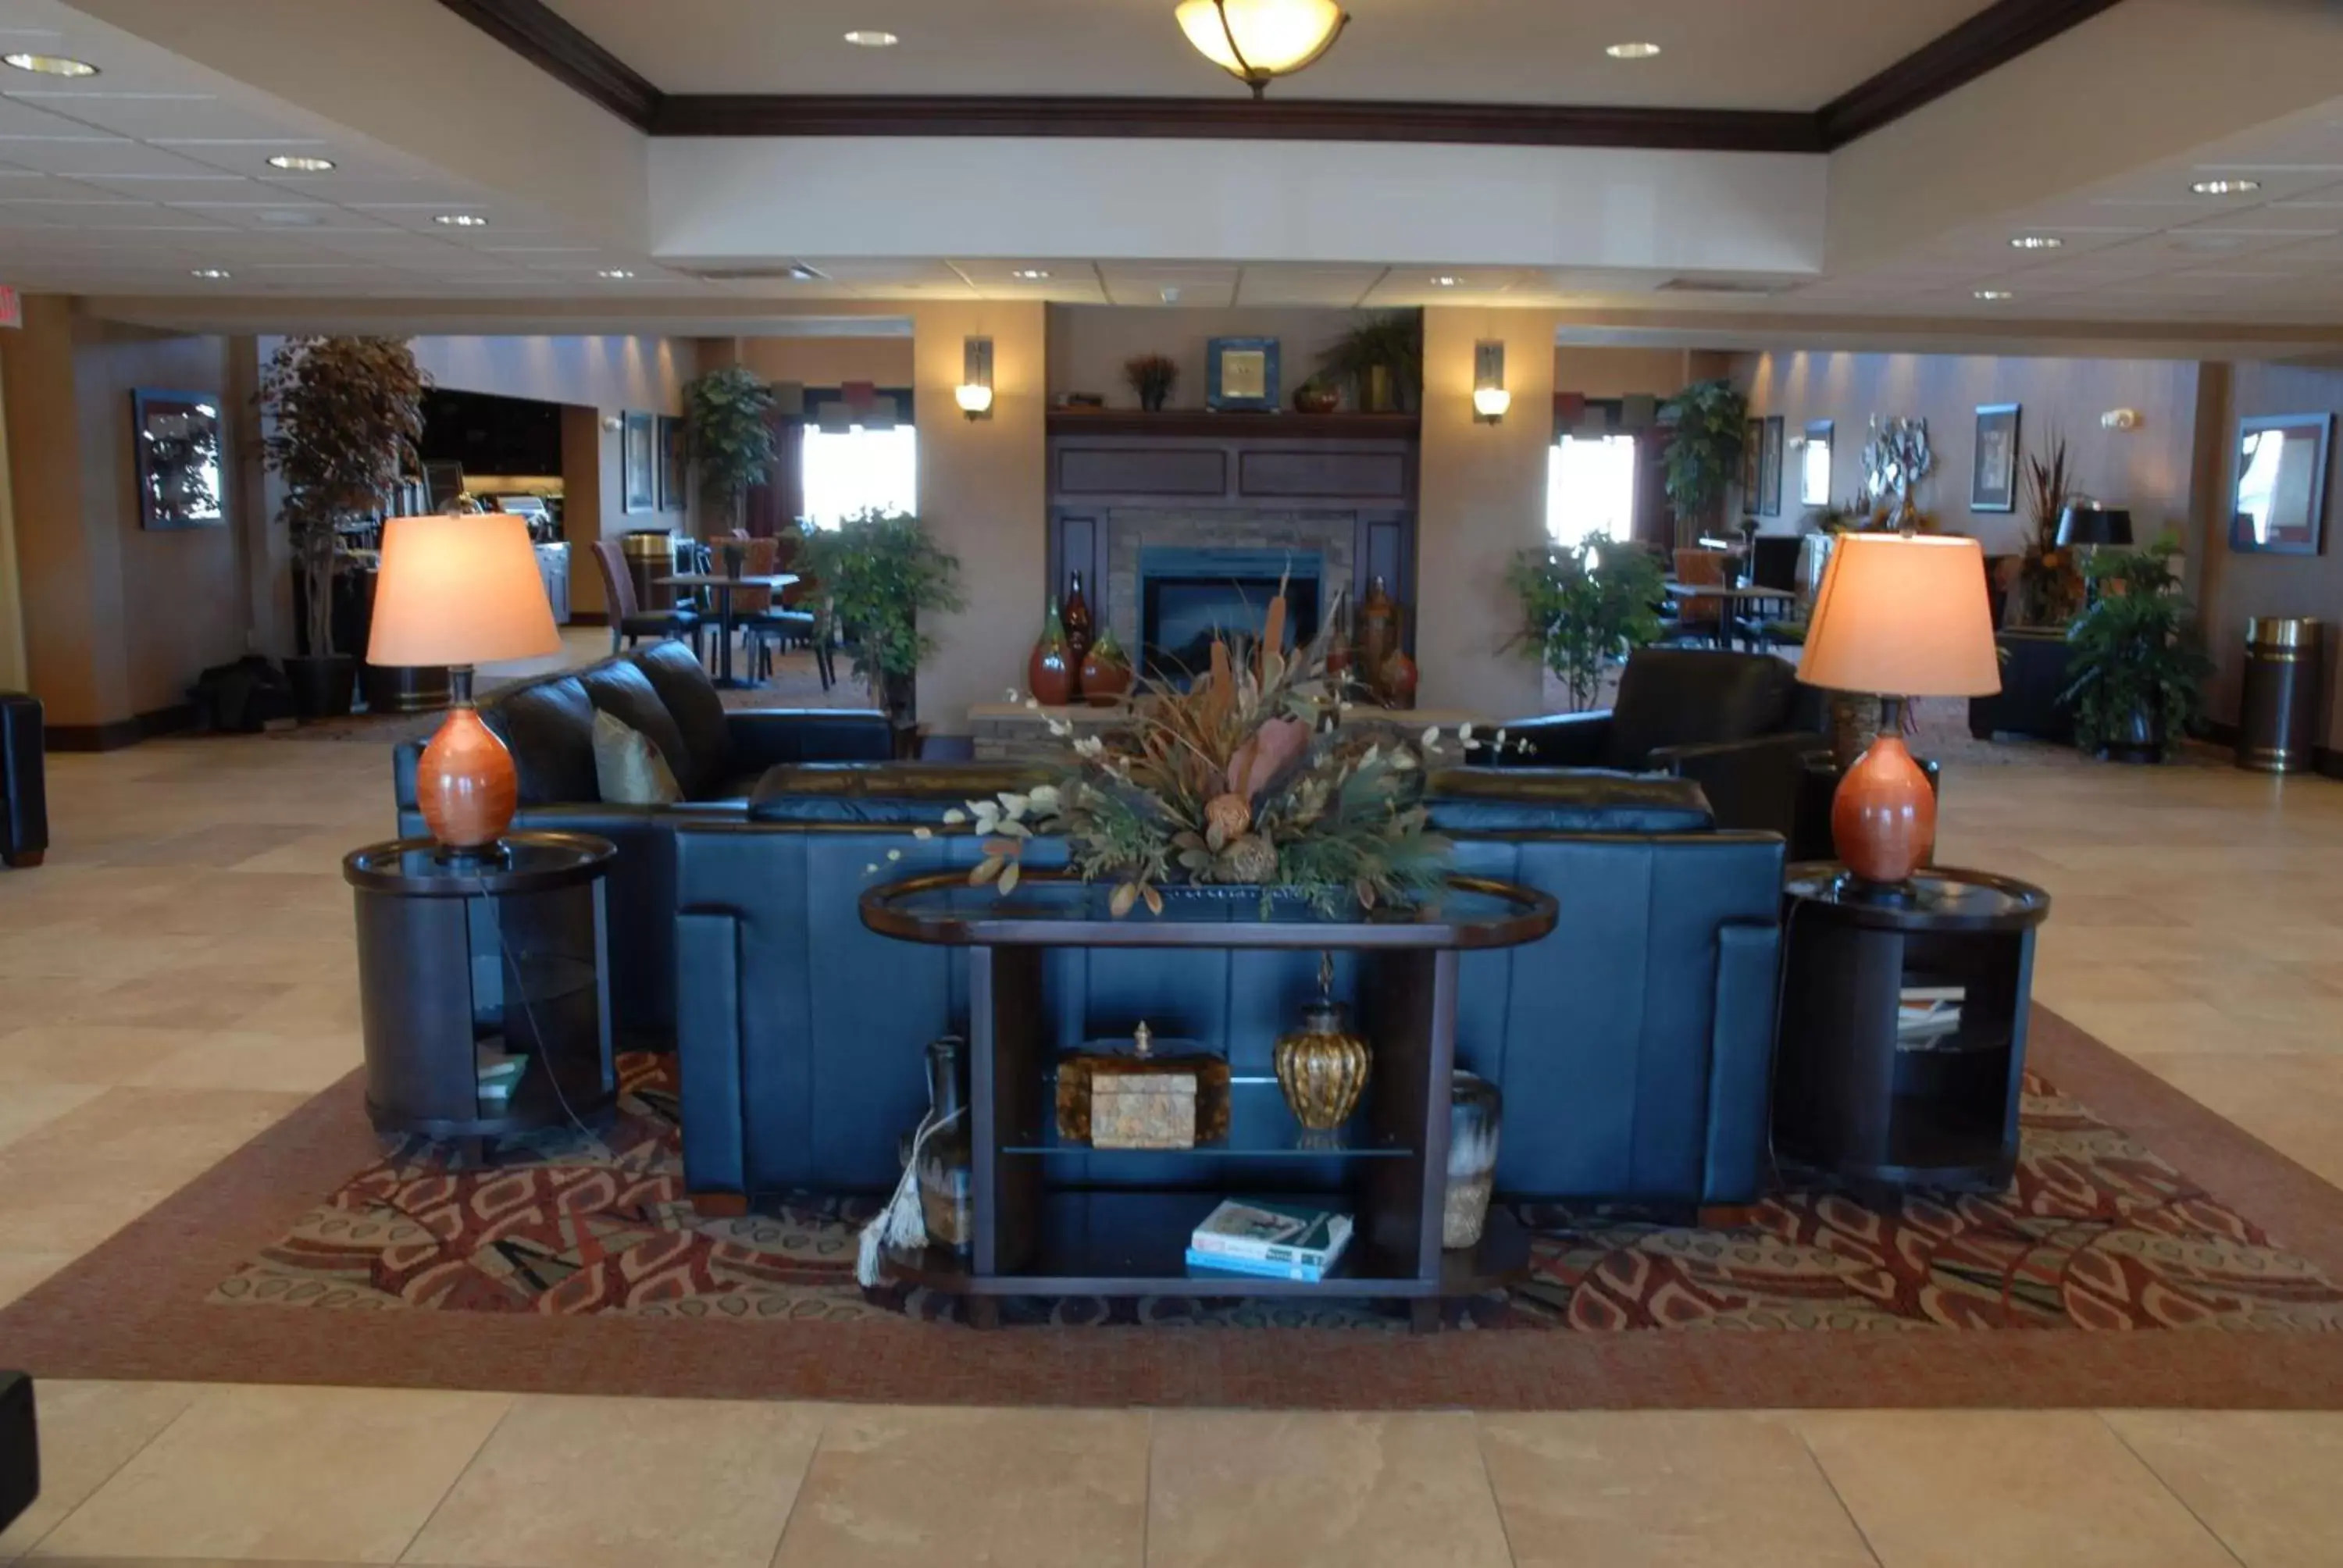 Lobby or reception in Homewood Suites - Rock Springs